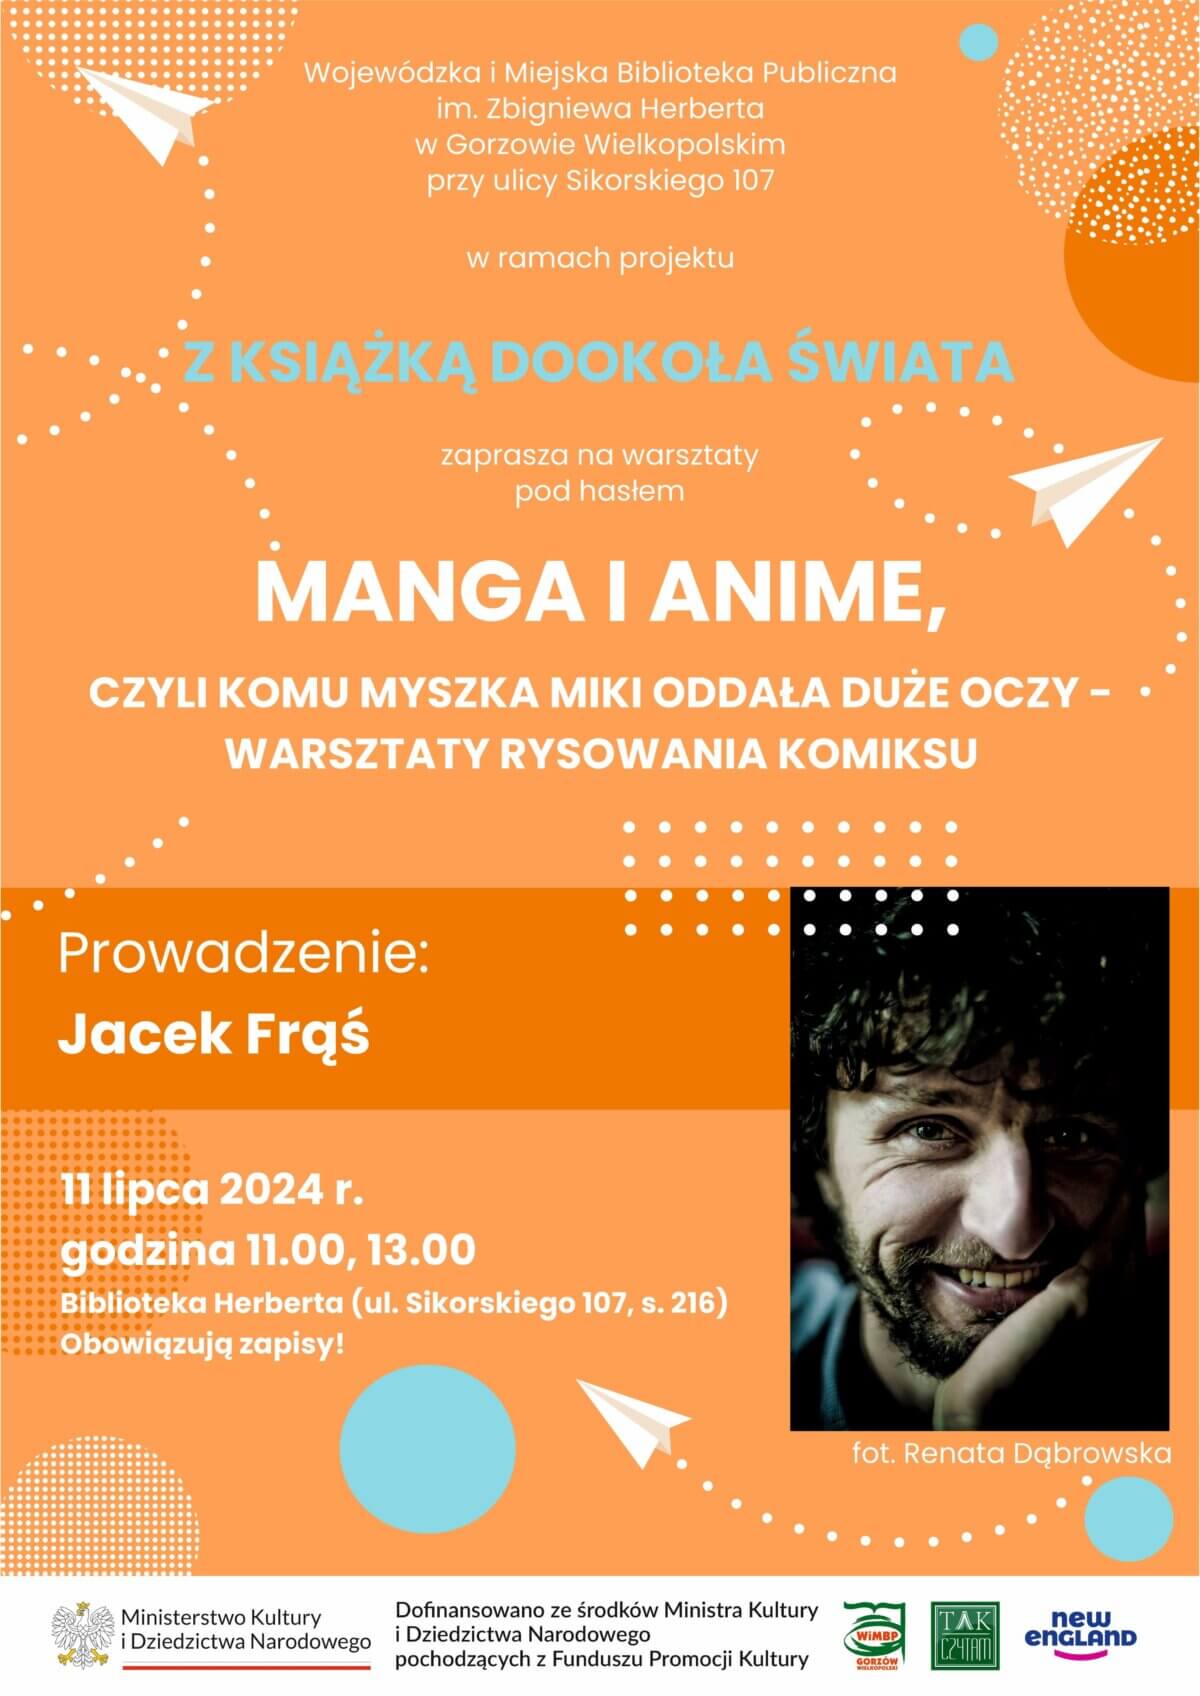 plakat promujący wydarzenie "Manga i Anime".